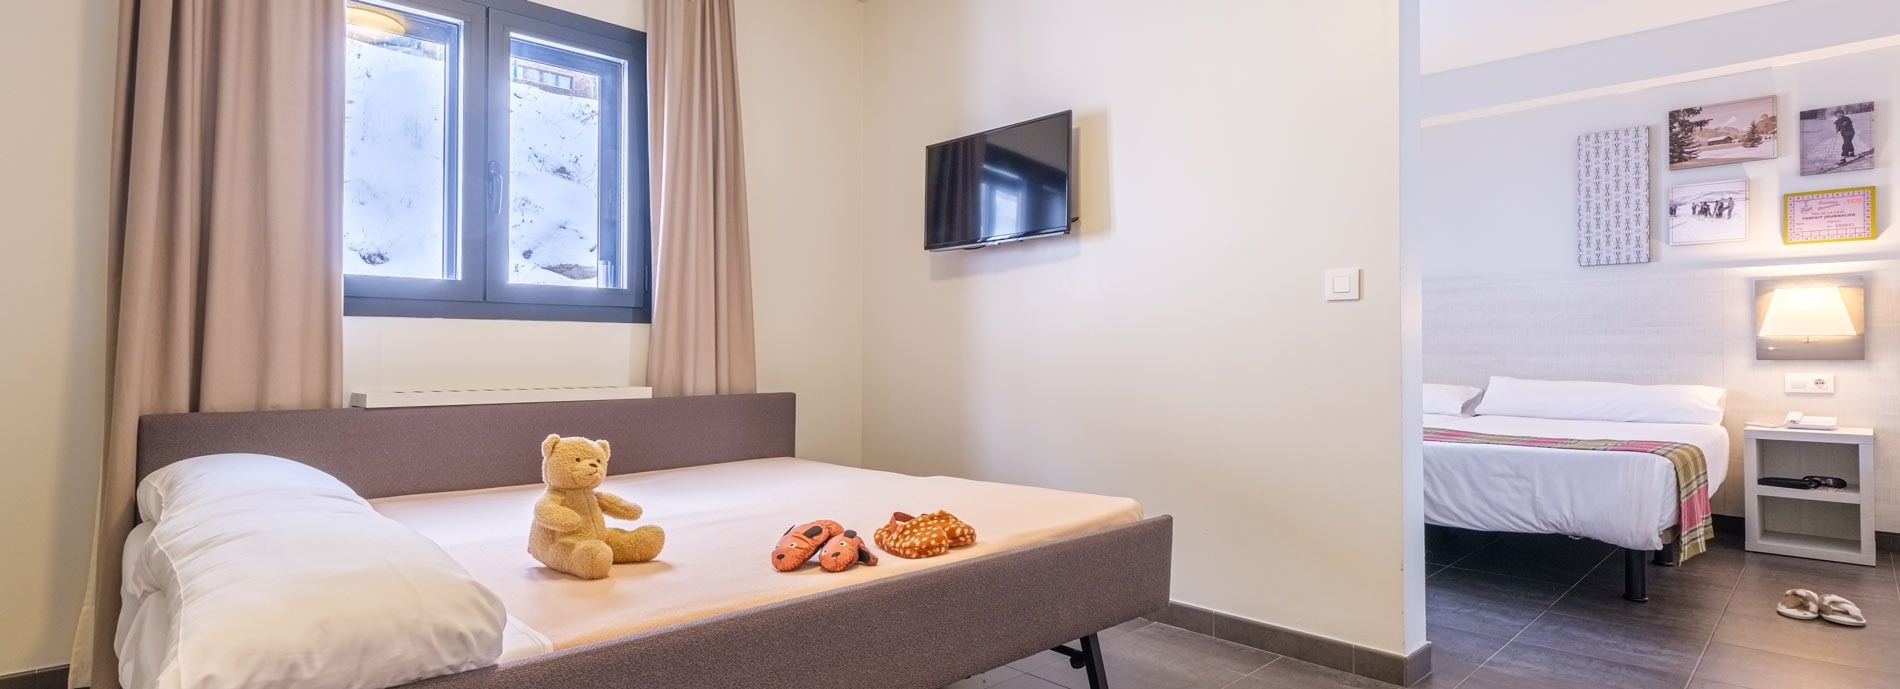 une chambre d' hôtel avec deux lits et une télévision